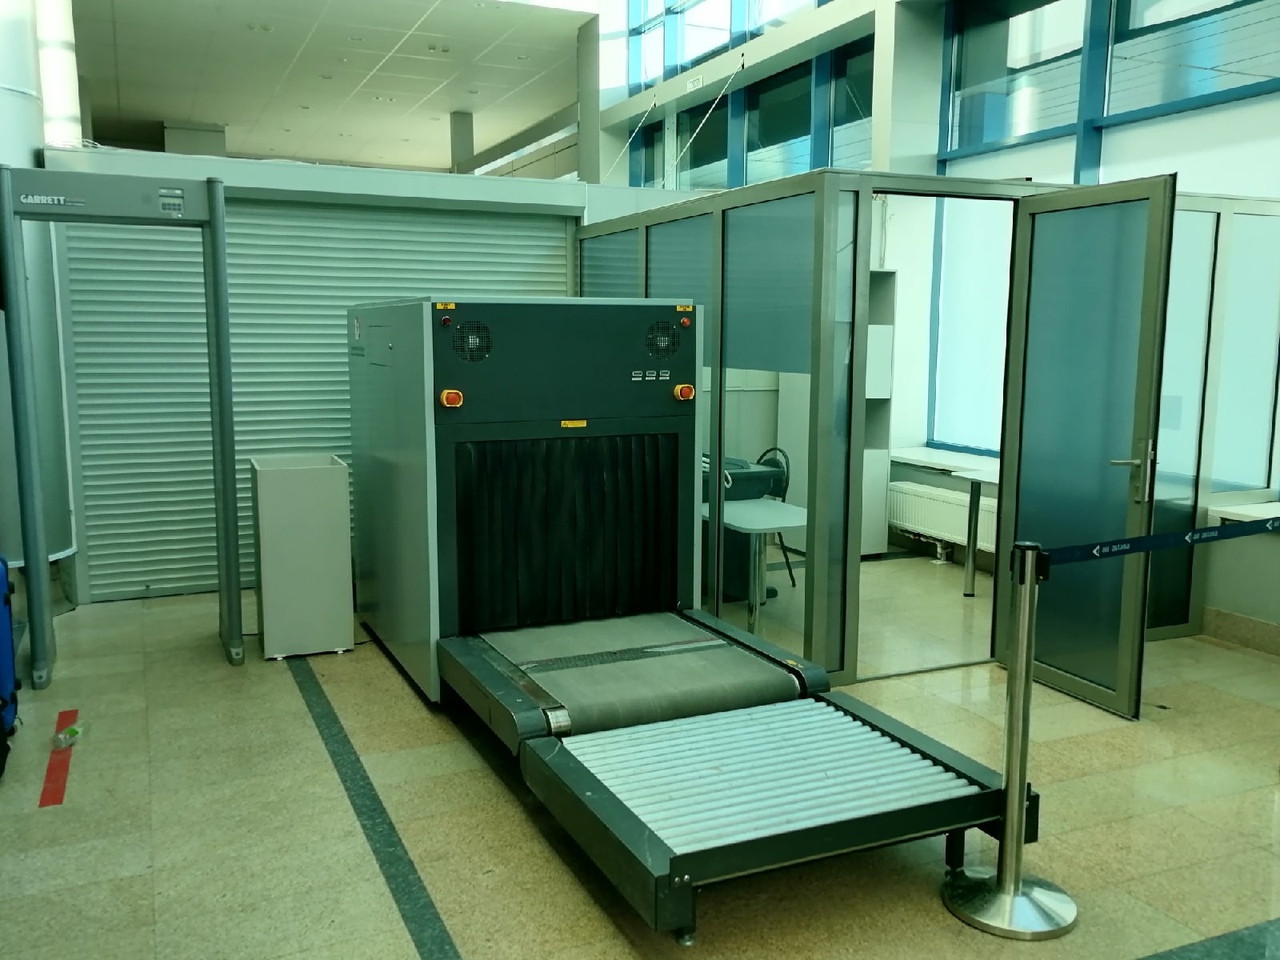 Пассажиры Омского аэропорта теперь меньше стоят в очередях #Новости #Общество #Омск